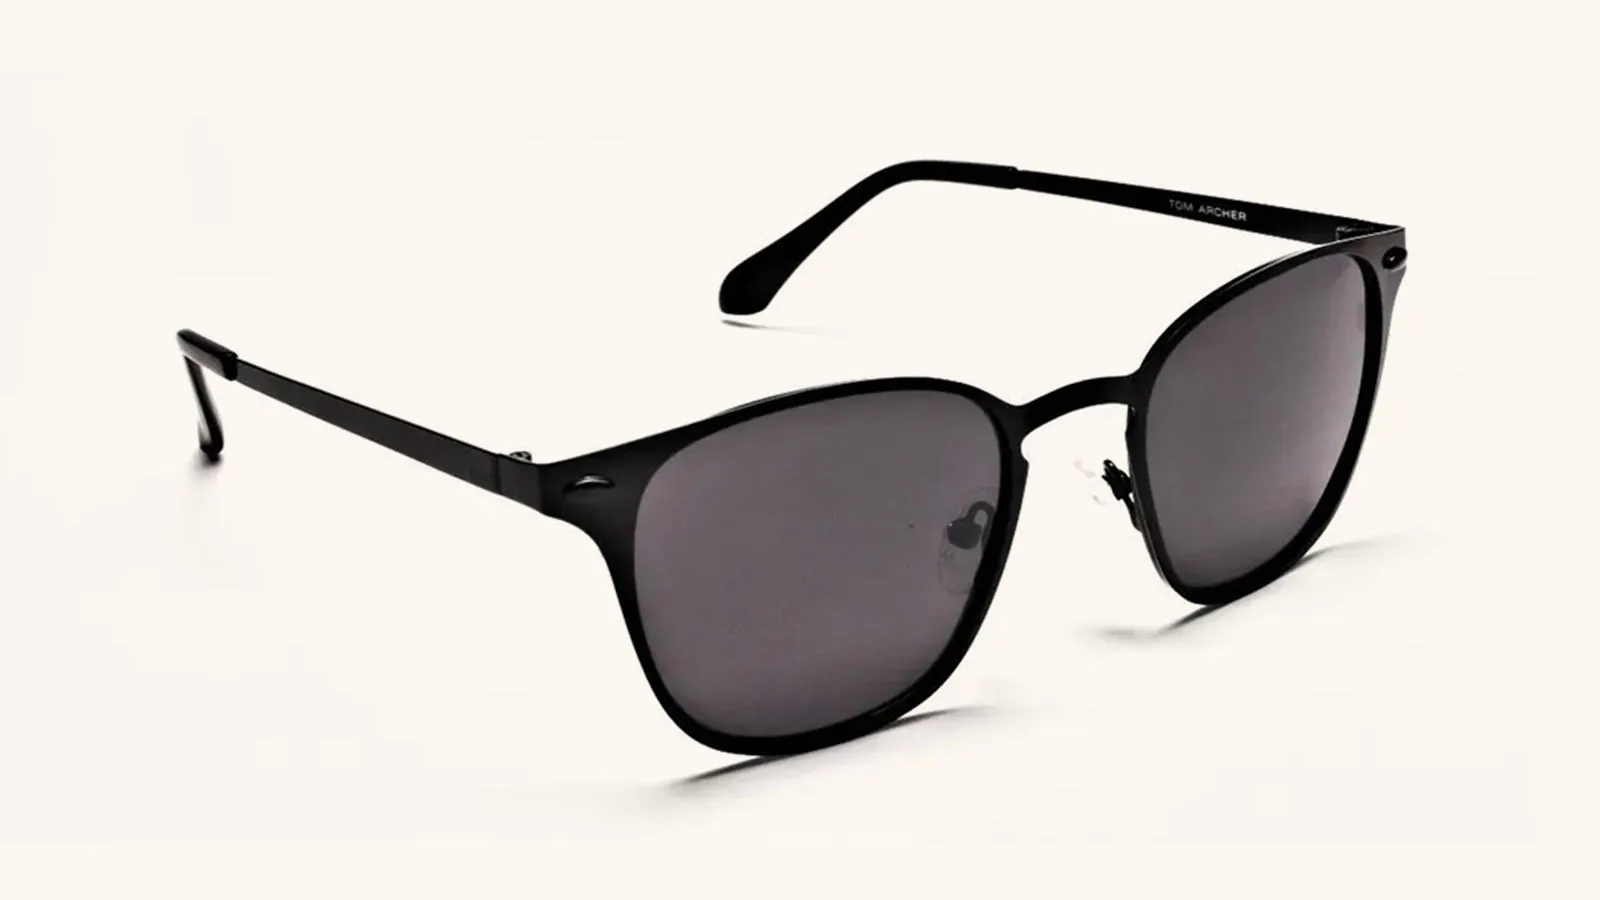 Wayfarer Sunglasses for Travel 